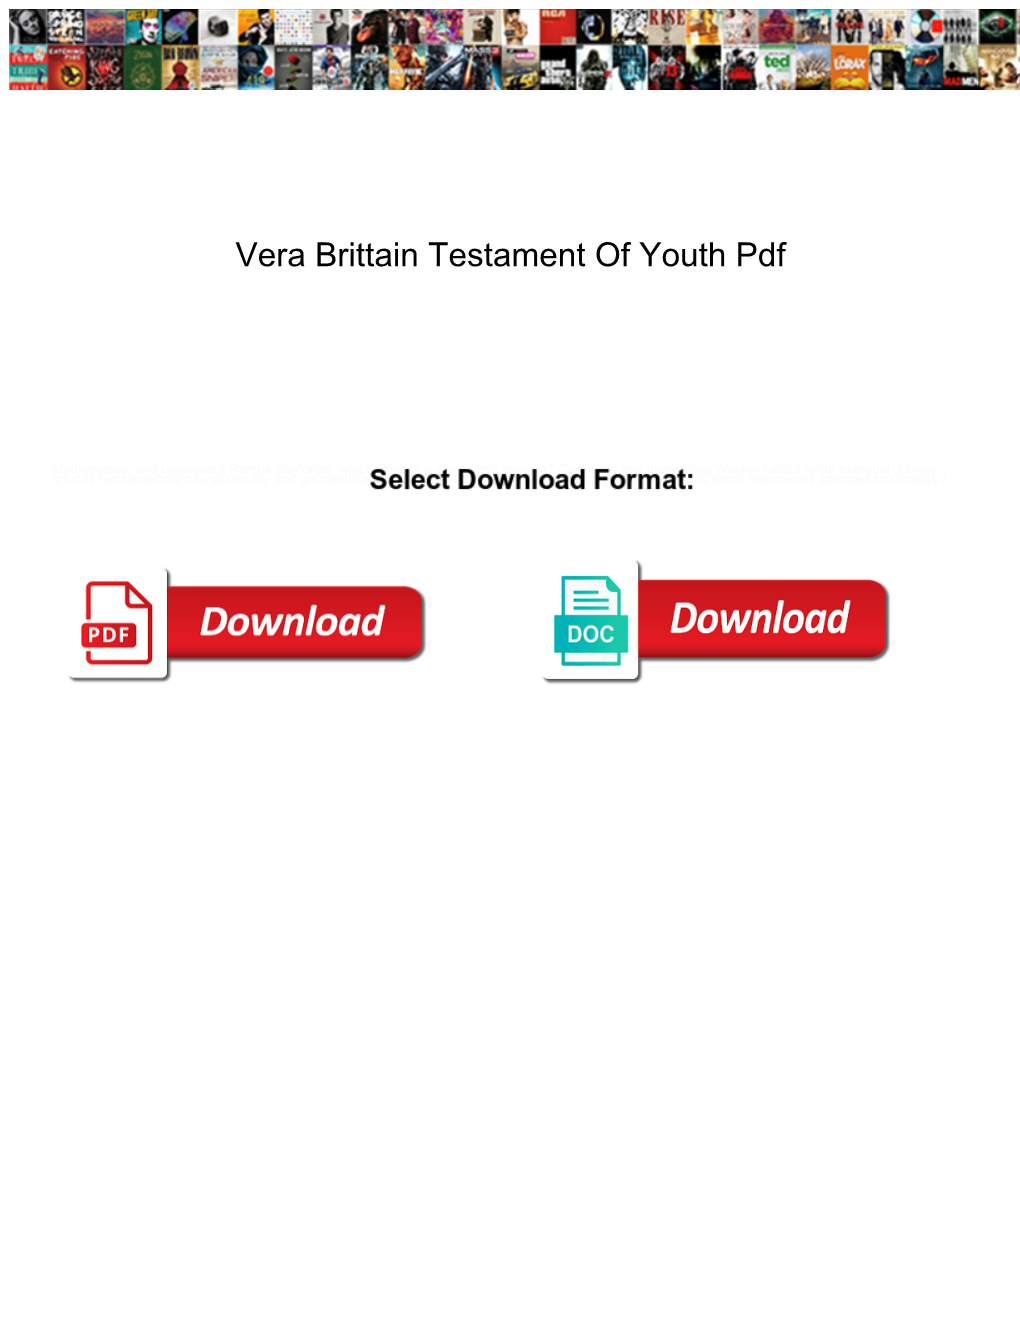 Vera Brittain Testament of Youth Pdf